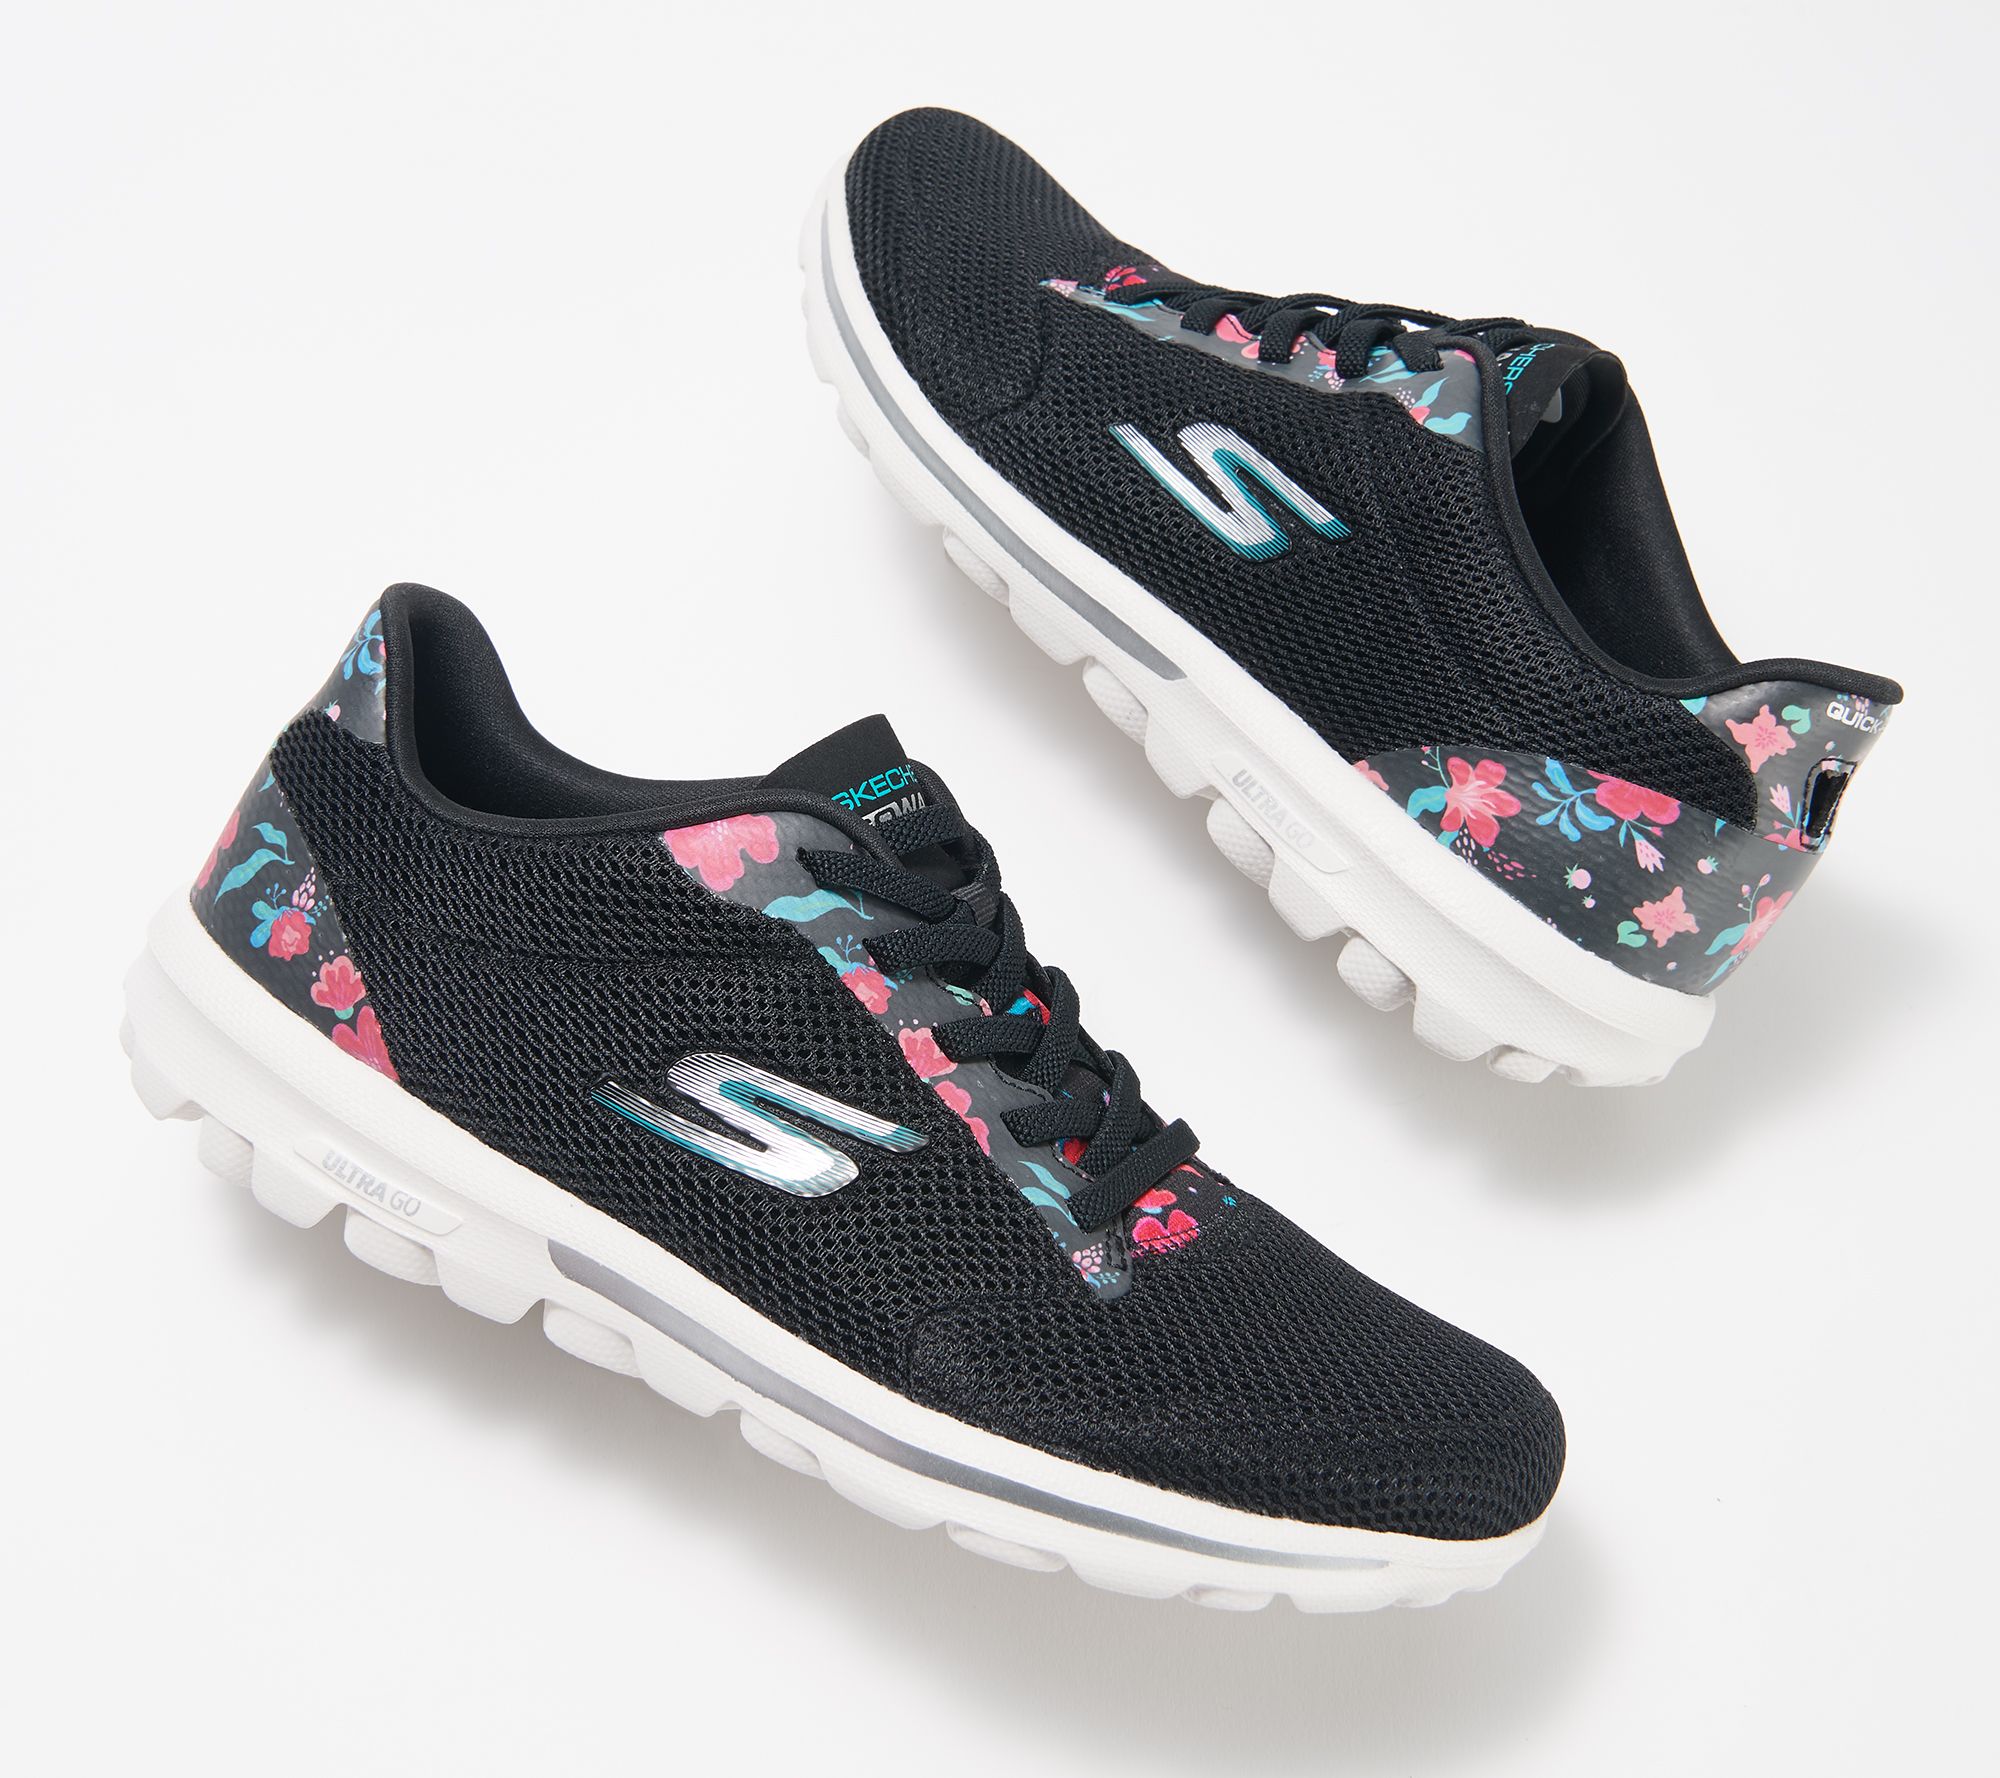 skechers floral sneakers